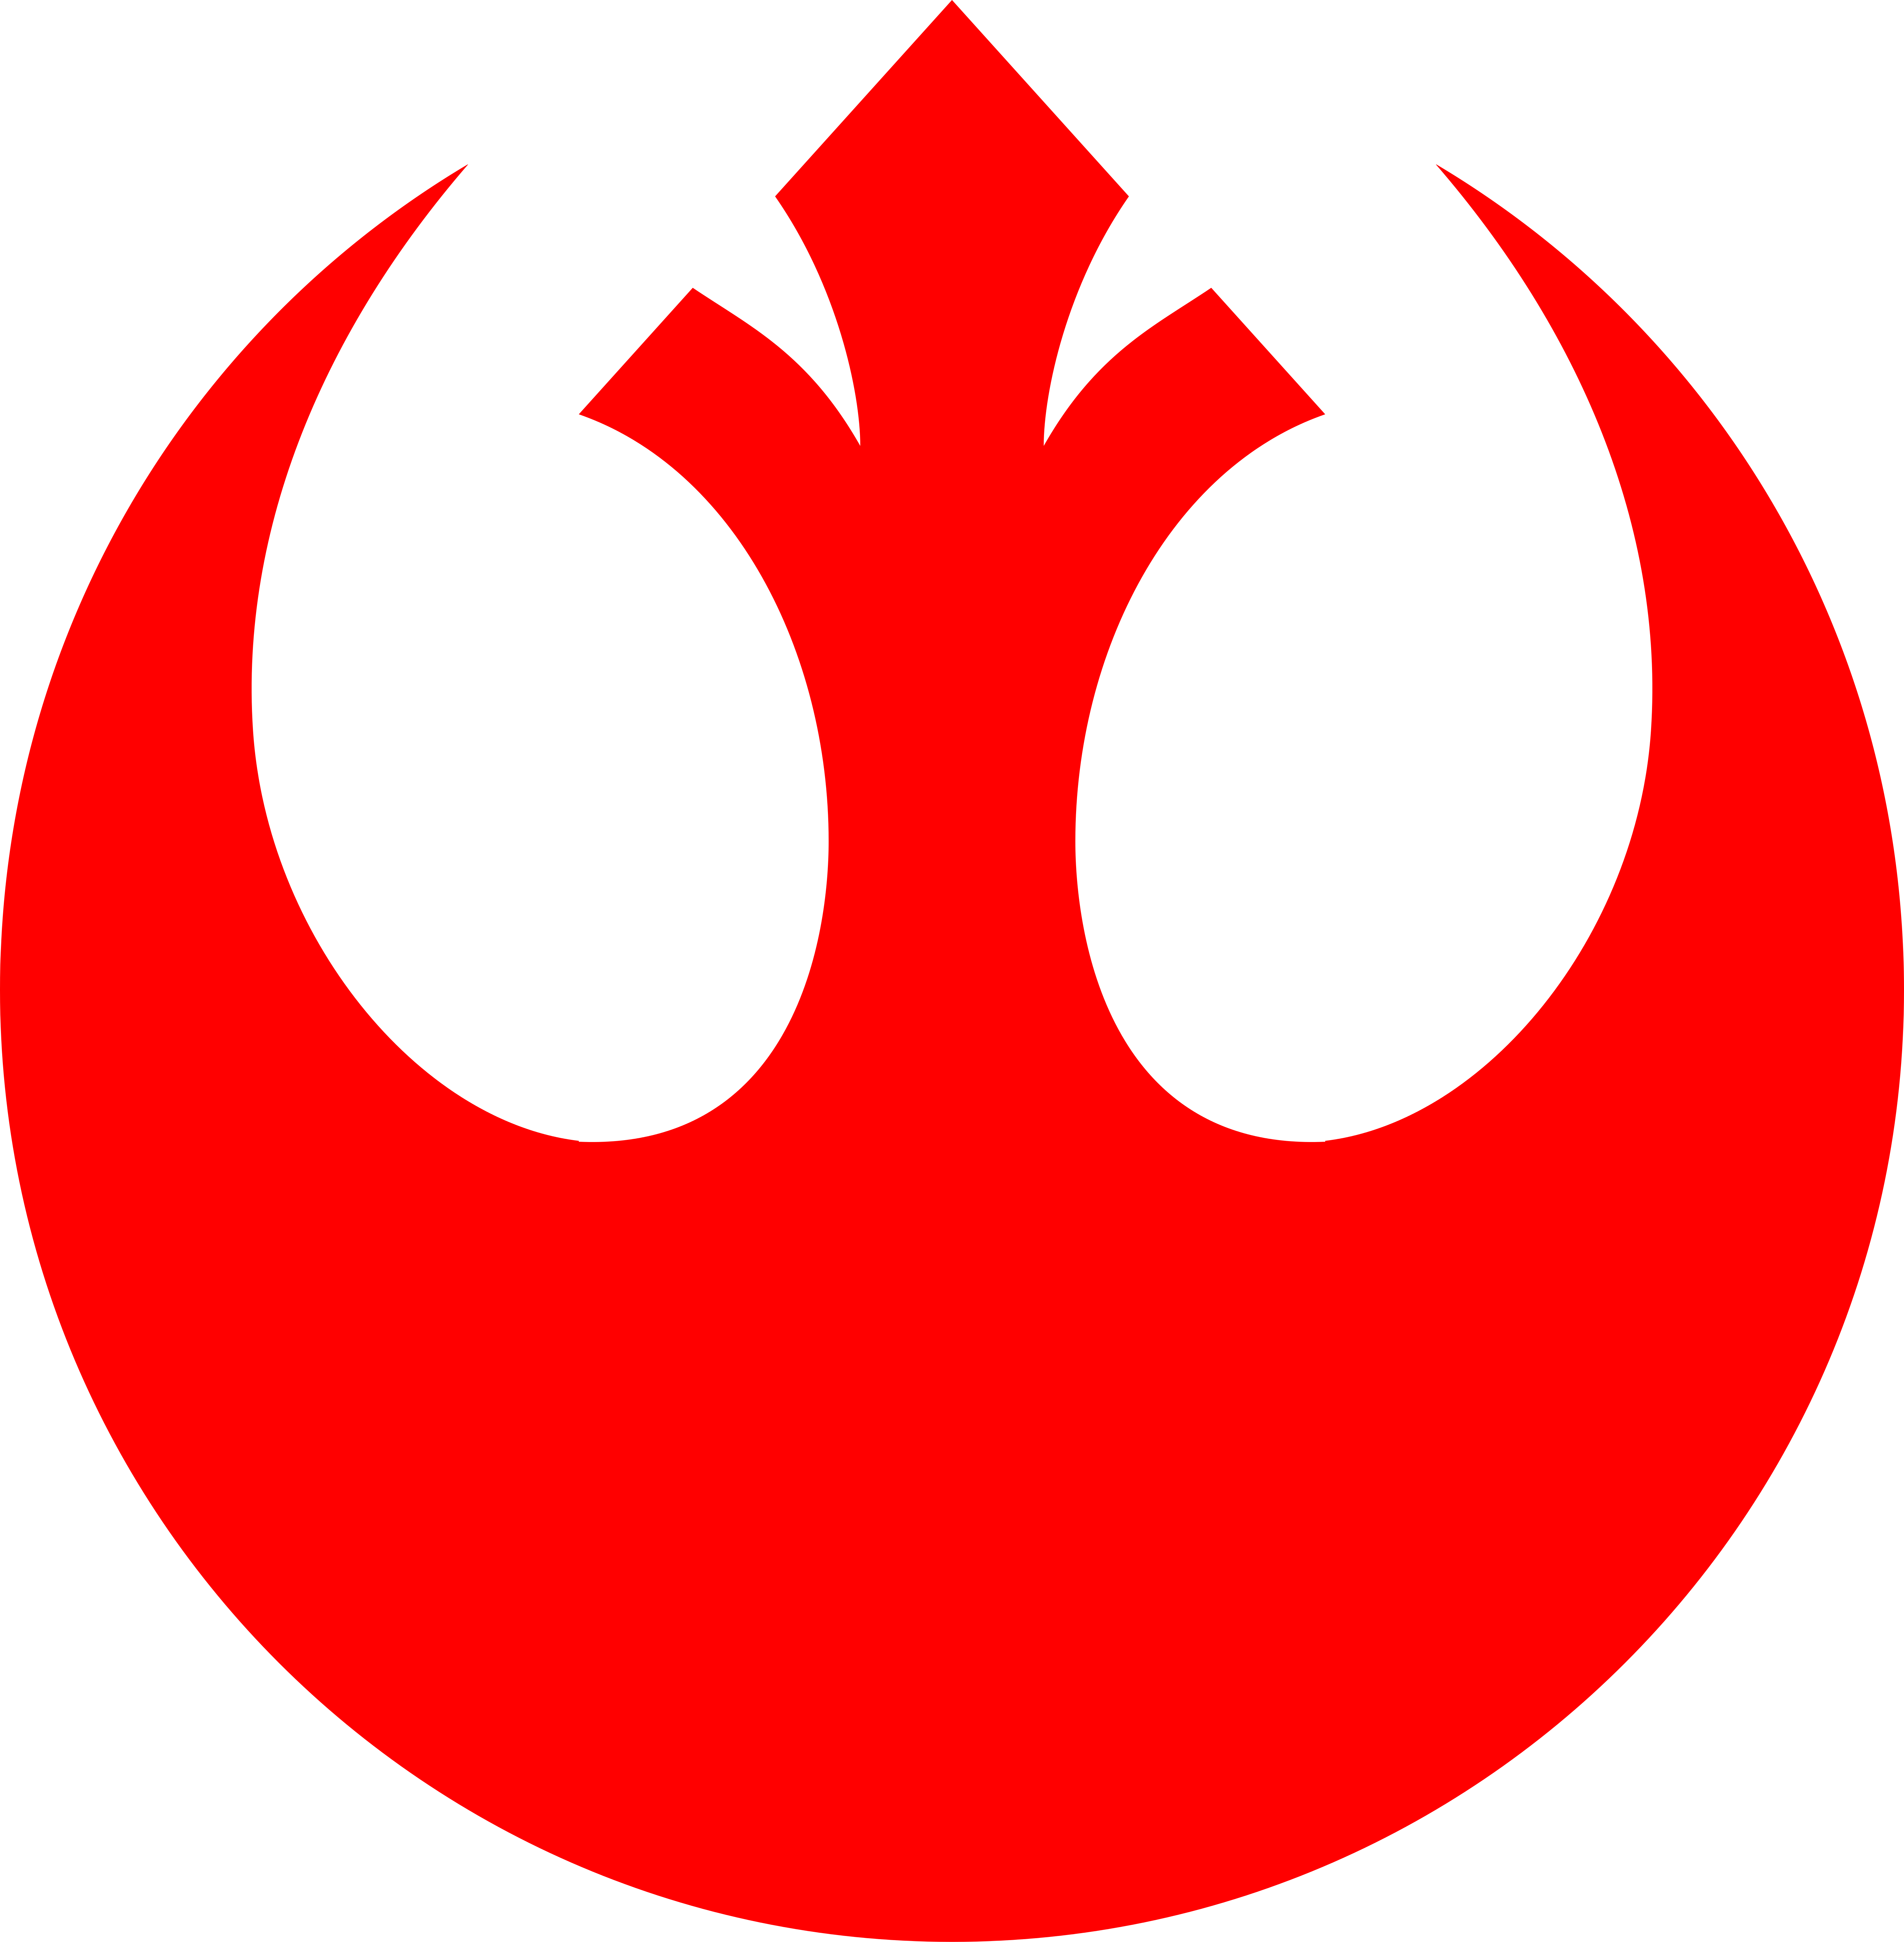 Starwars Clipart Rebel Alliance Starwars Rebel Alliance